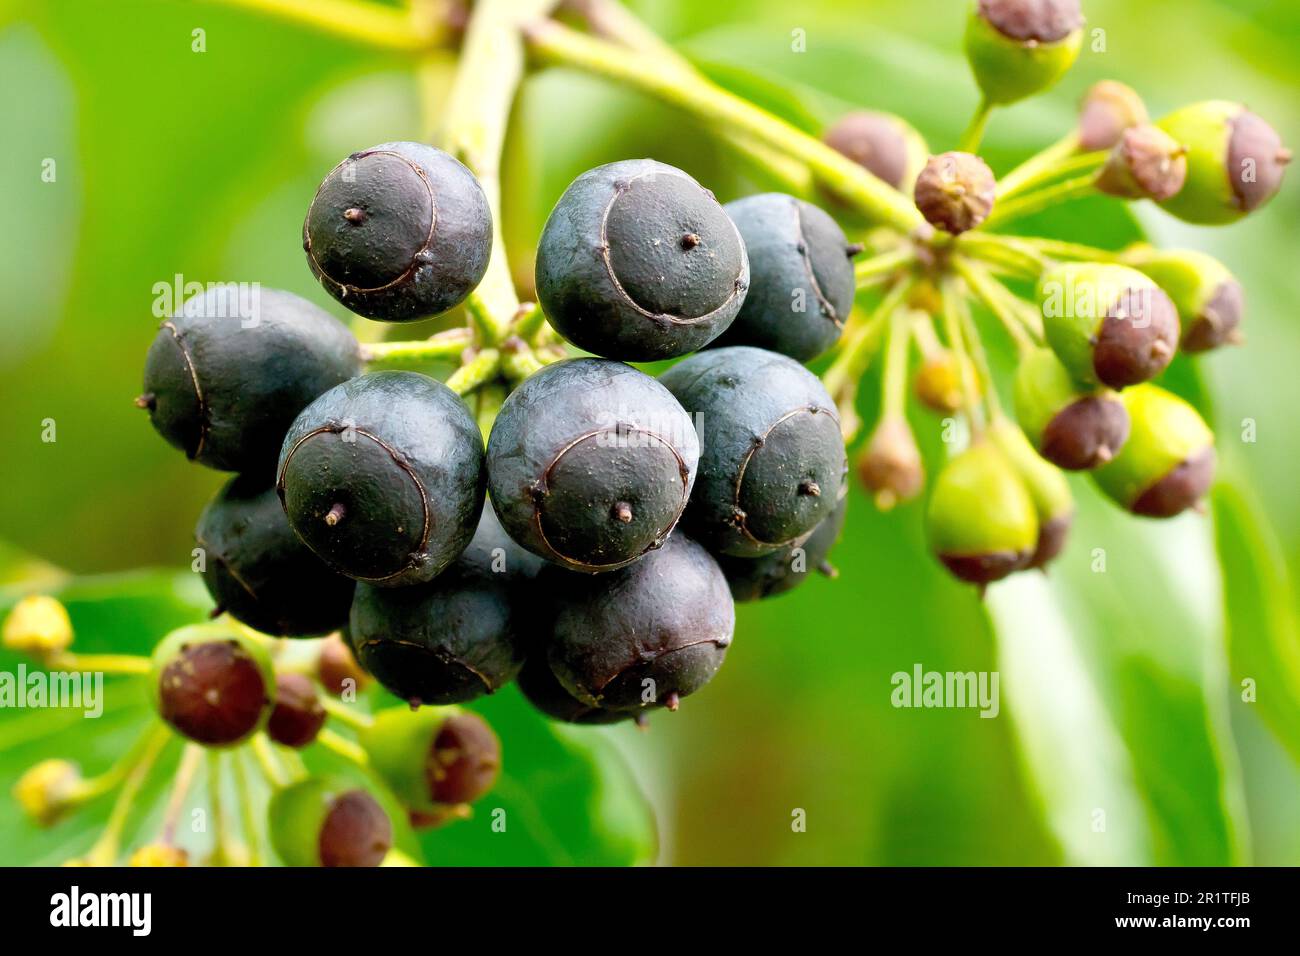 Hiedra (hedera hélice), cerca de un pequeño grupo de bayas negras maduras producidas por el arbusto en la primavera. Foto de stock